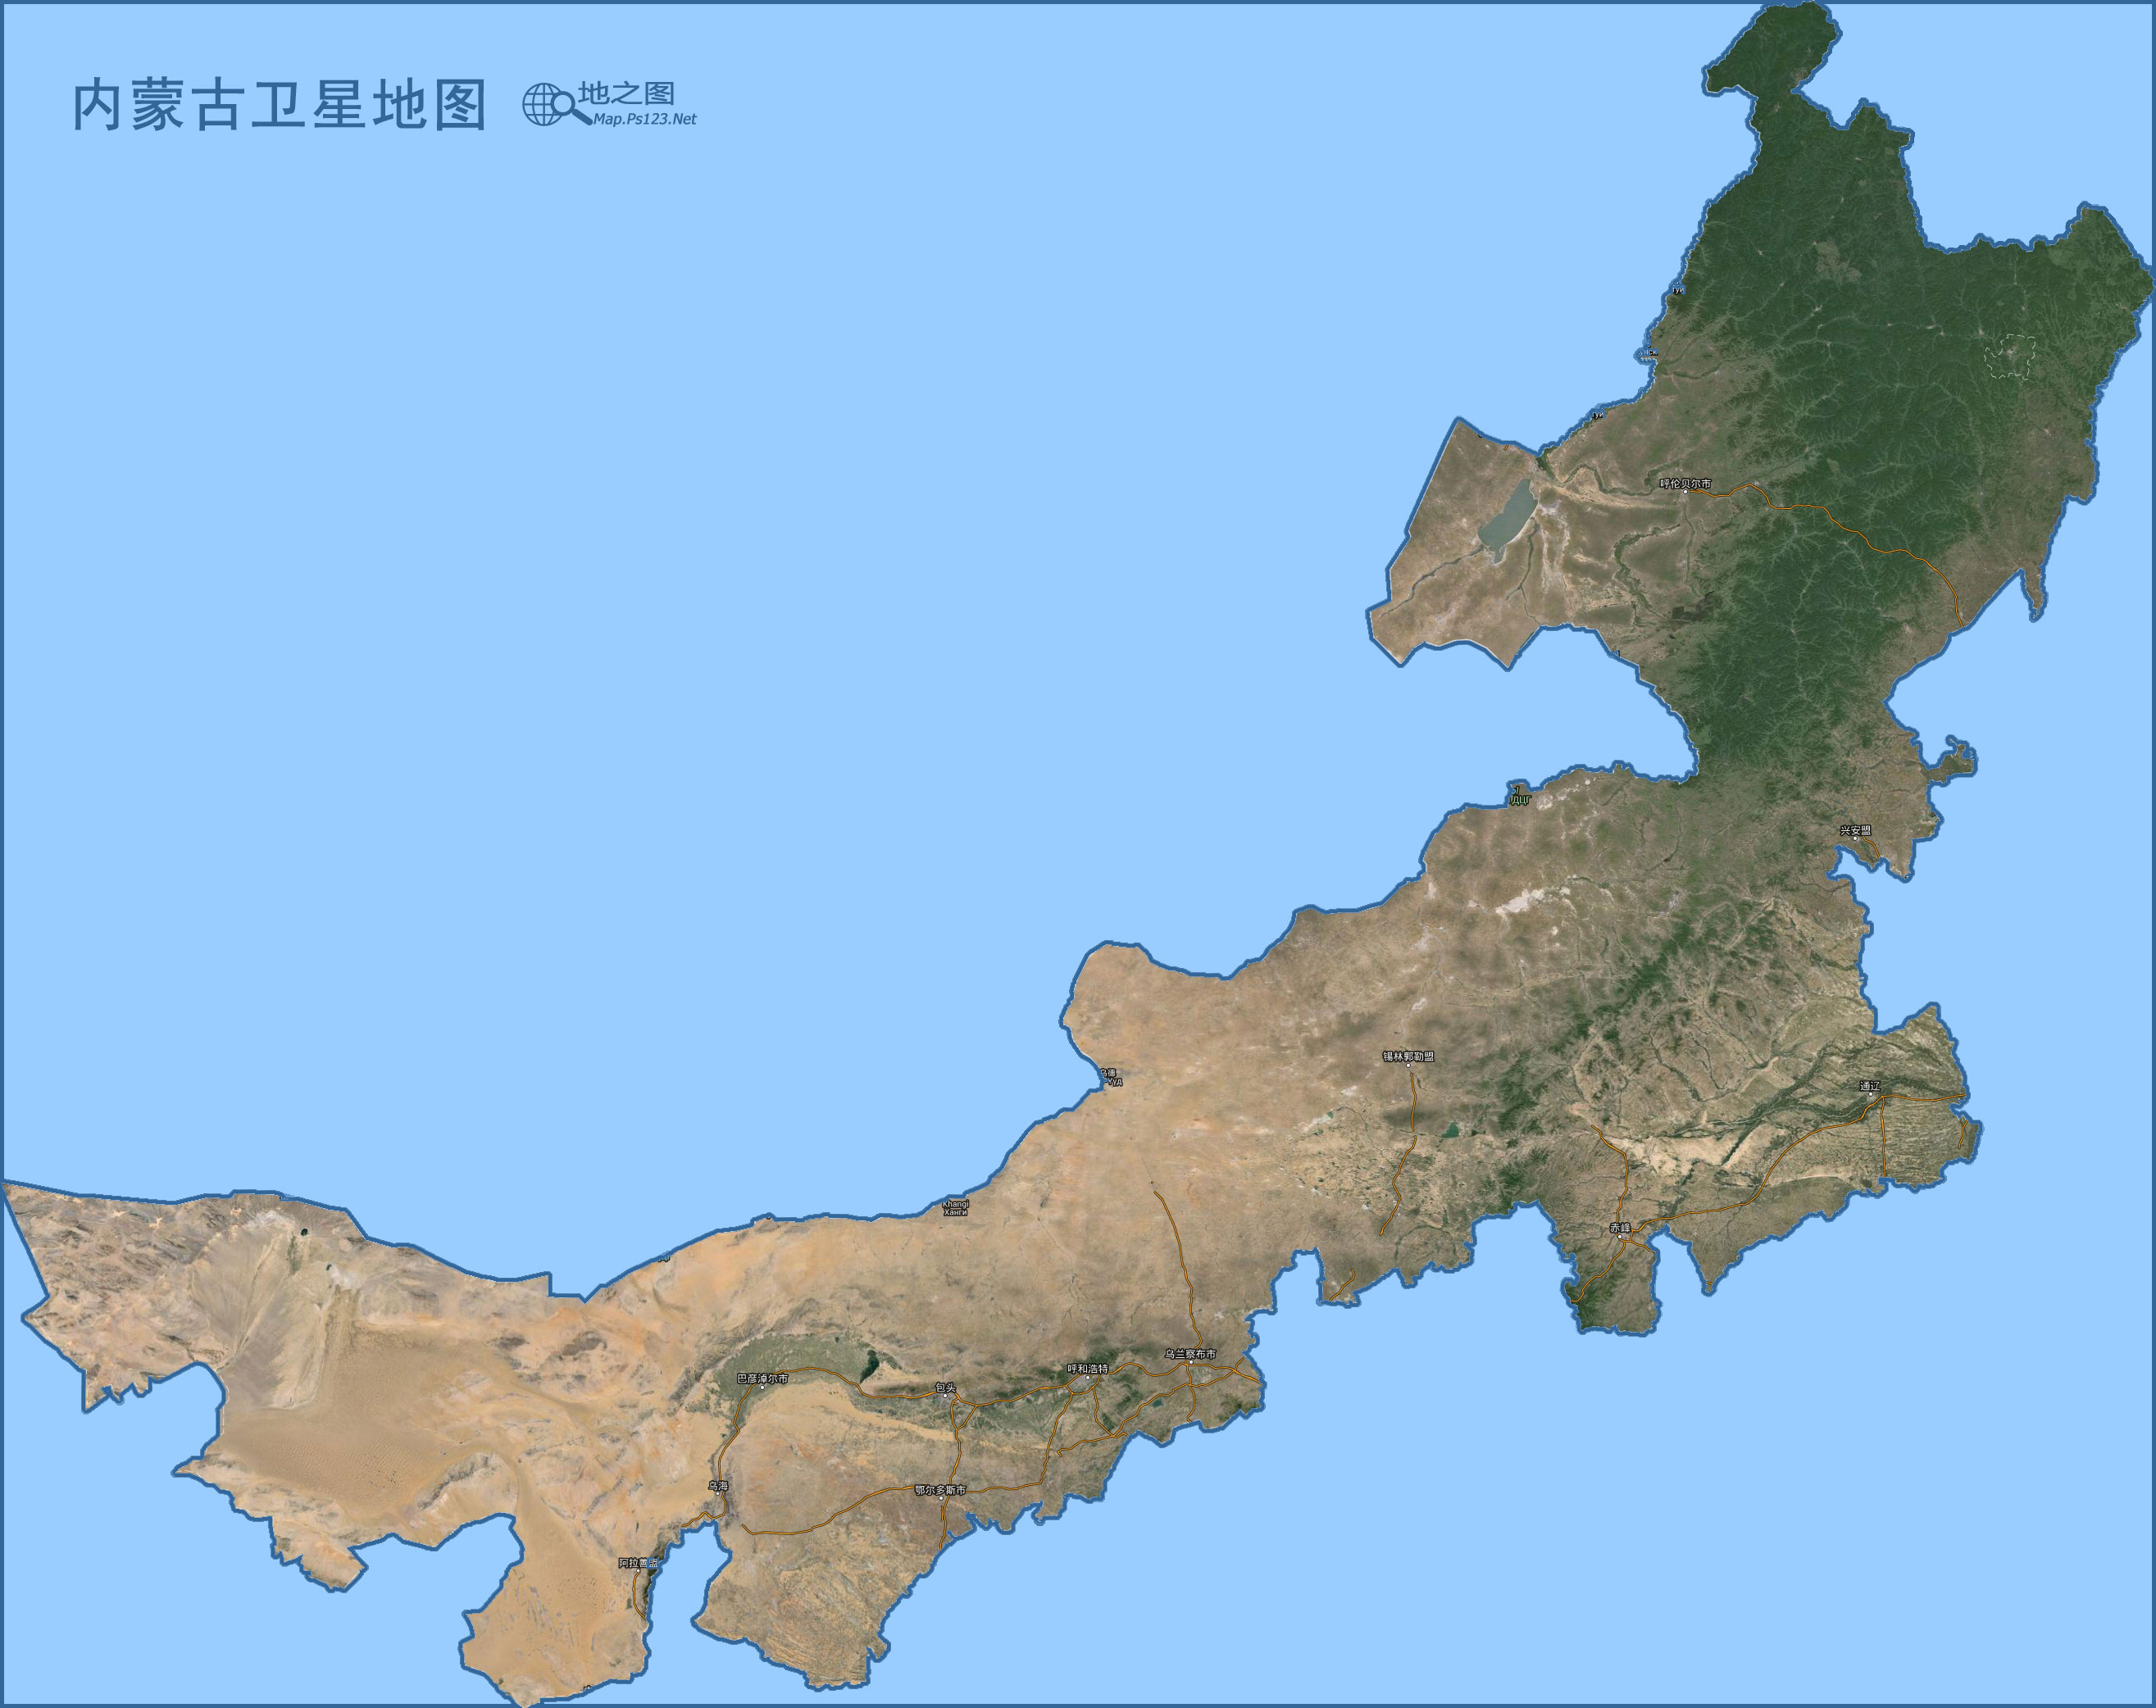 内蒙古地图(卫星图)图片